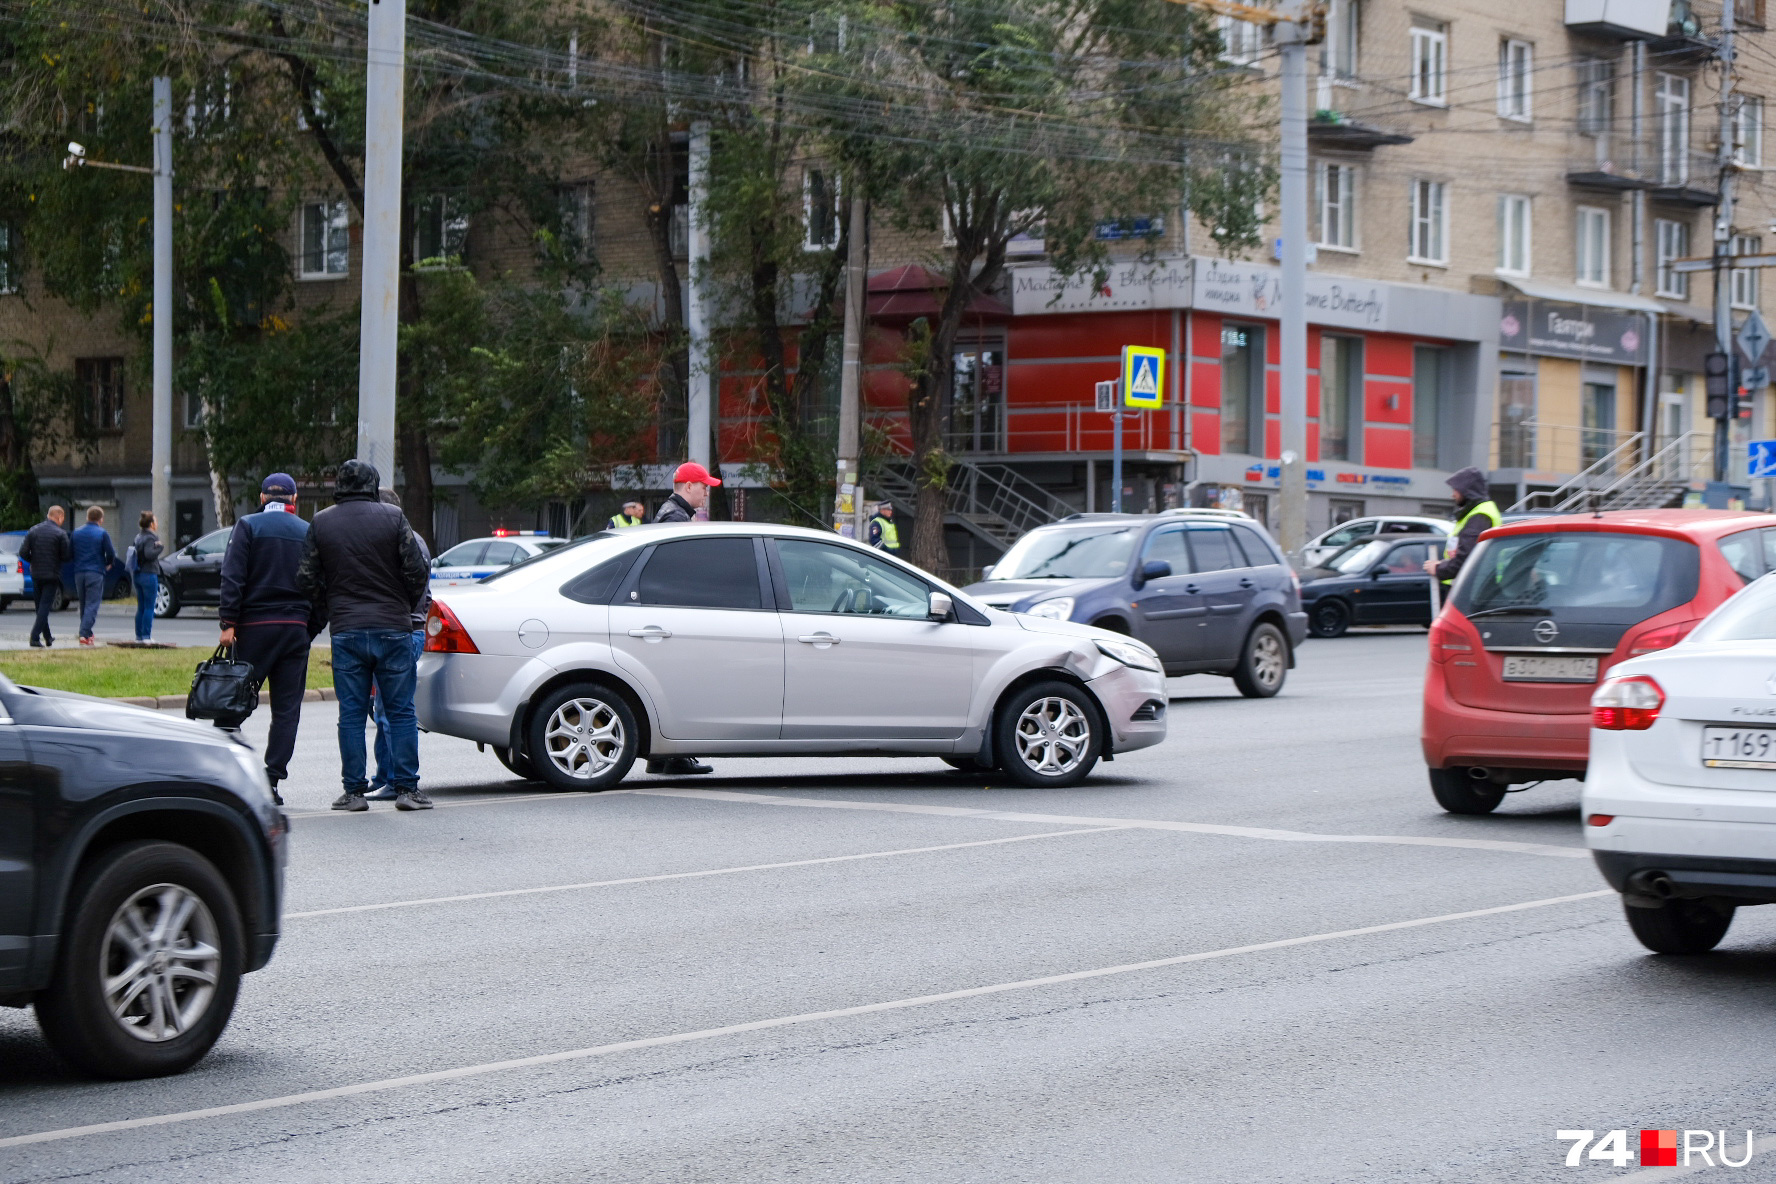 В Госавтоинспекции сообщают только о двух автомобилях, столкнувшихся на перекрестке, но на фото видно, что есть и третий участник аварии